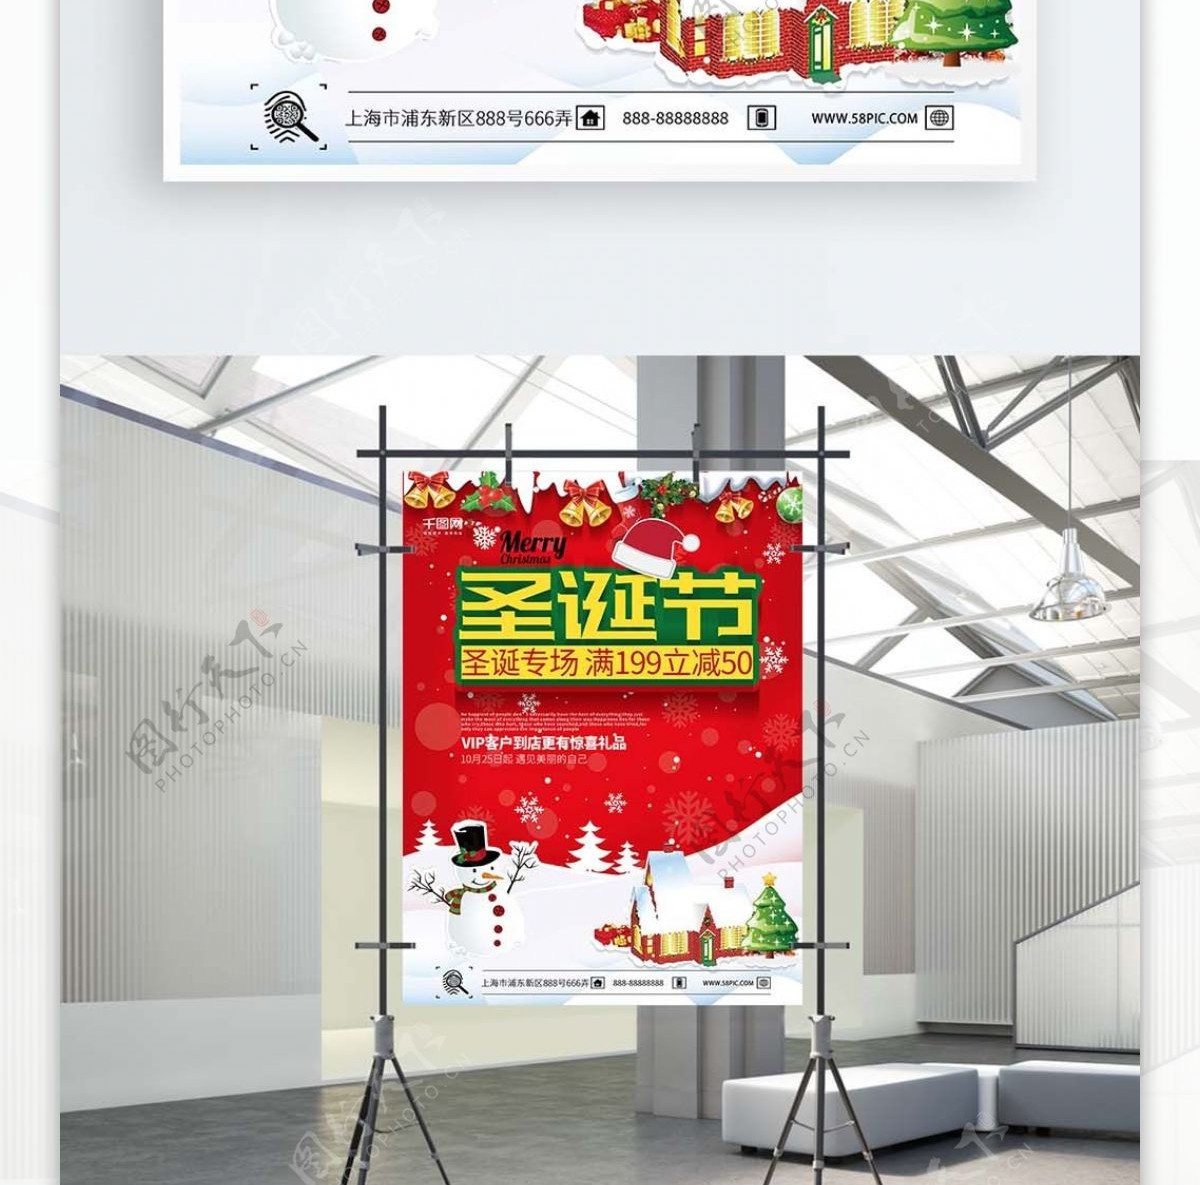 圣诞专场红色简约圣诞快乐促销海报